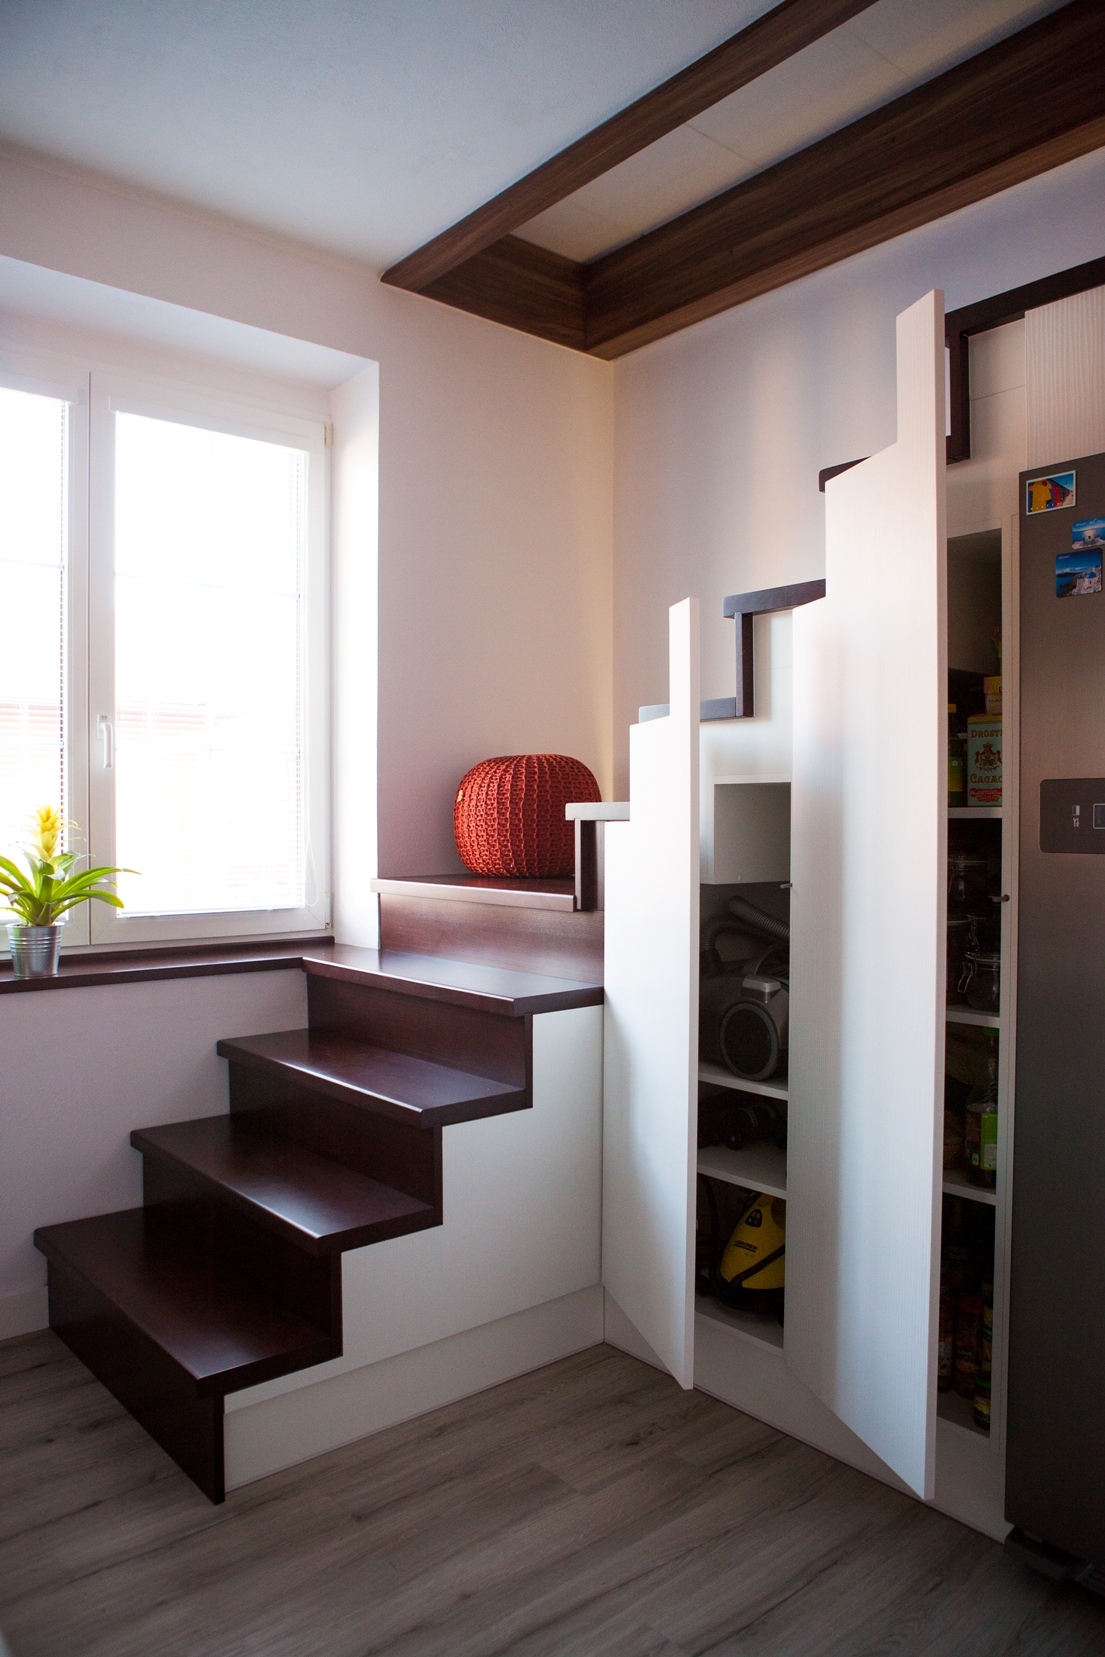 Barbora Sacher: Kuchyň pod schody, Schodiště do patra má velká odpočívadla, na kterých je možné sedět